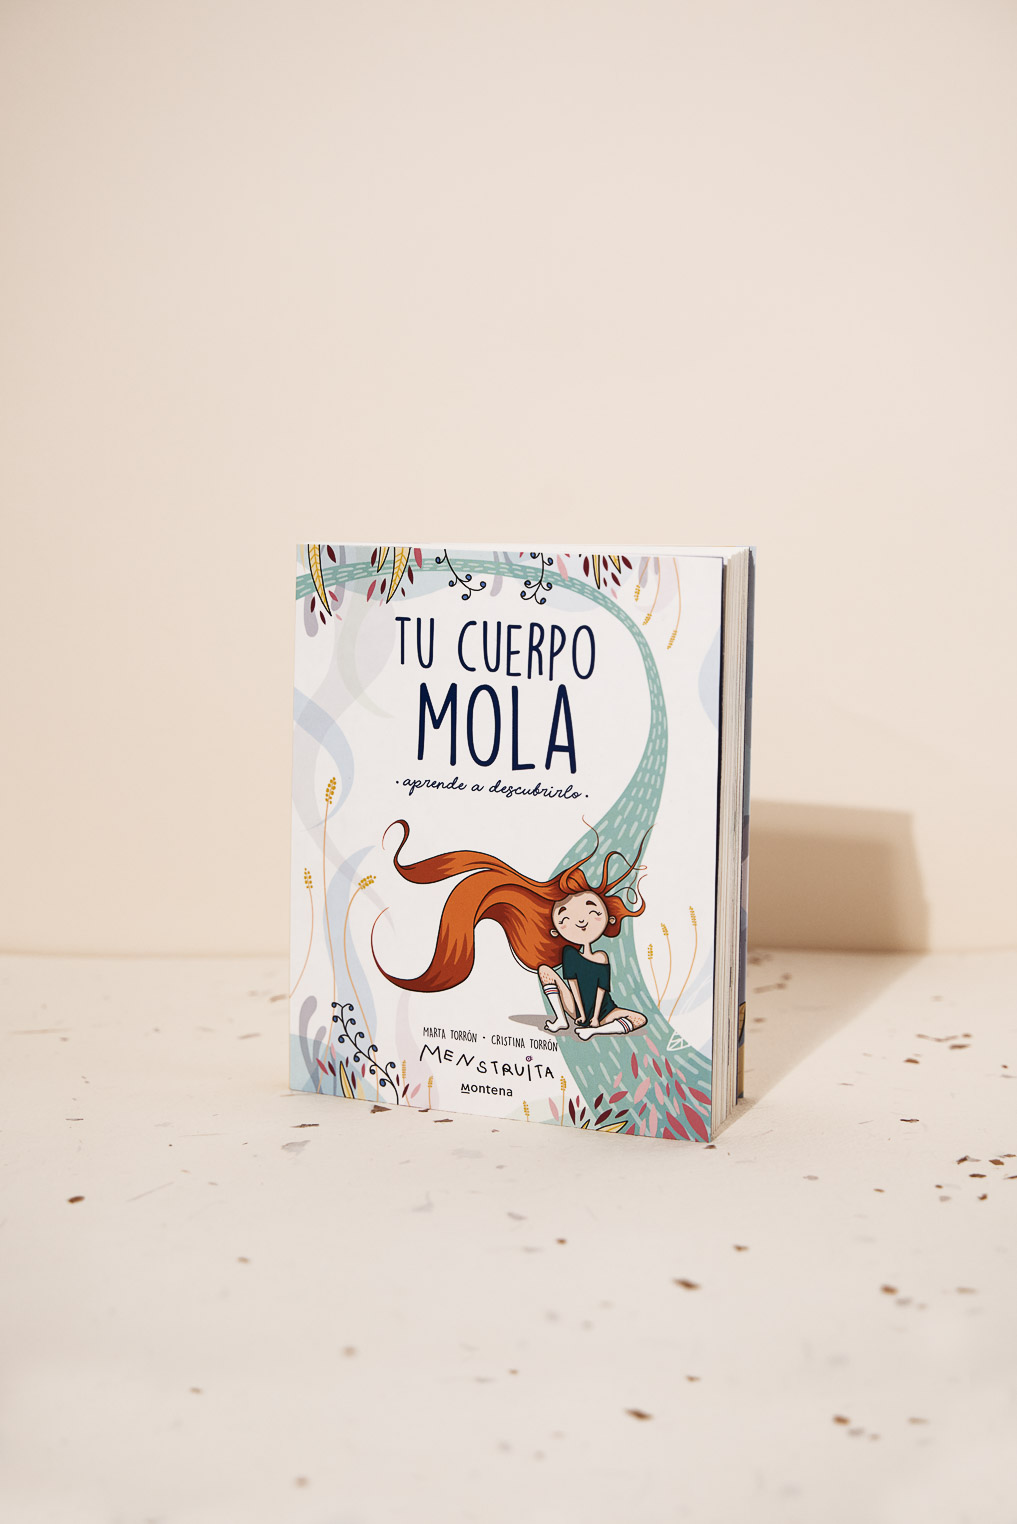  Tu cuerpo mola: Aprende a descubrirlo (Spanish Edition) eBook :  Torrón (Menstruita), Cristina, Torrón, Marta: Tienda Kindle